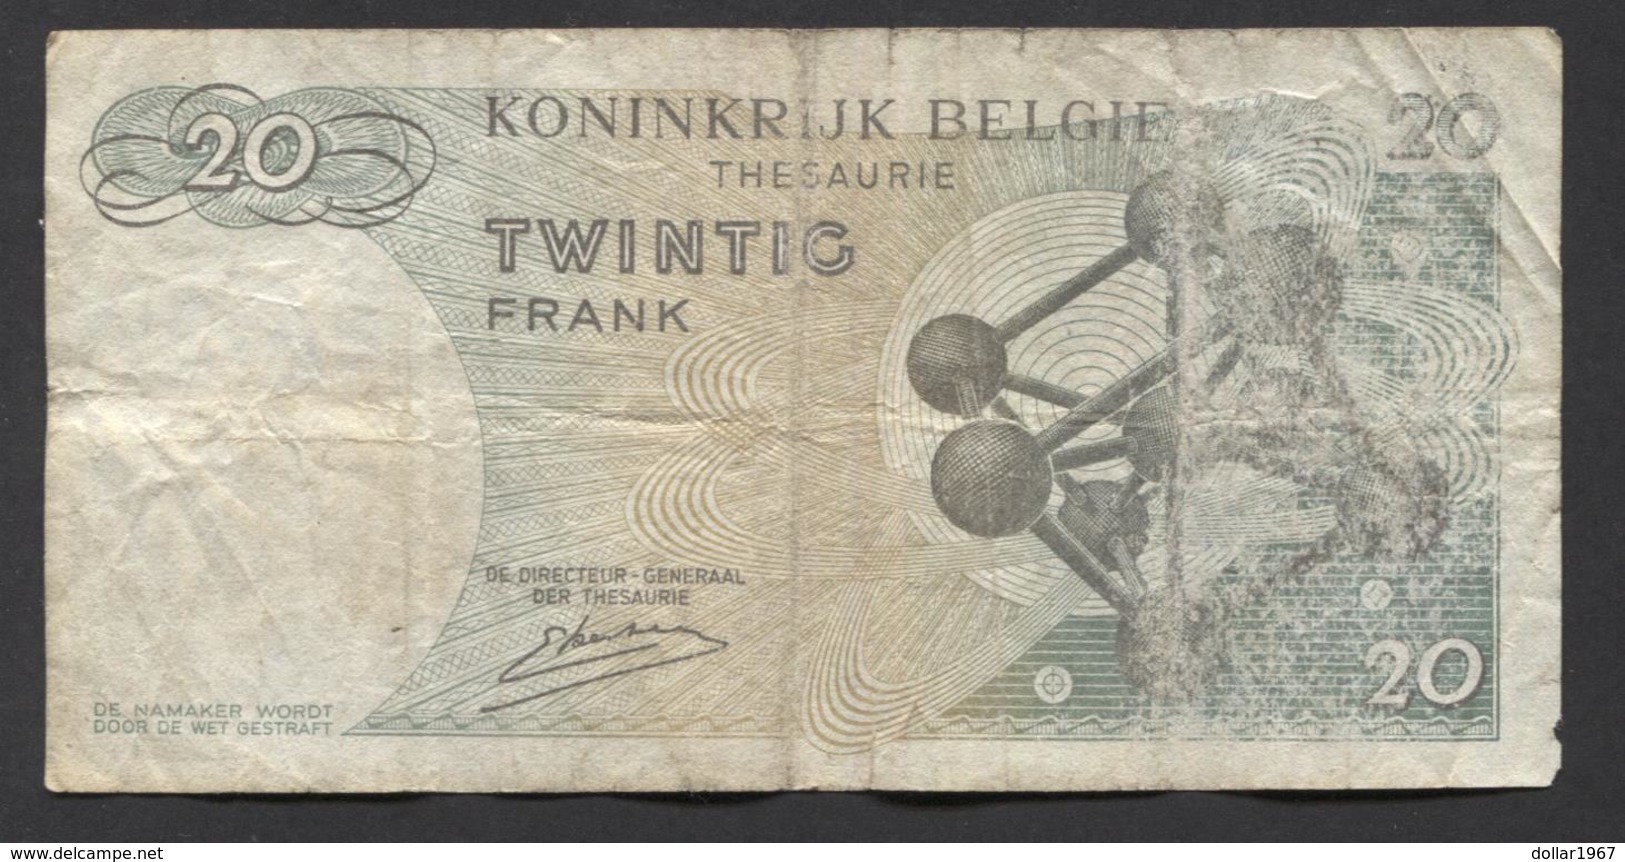 België Belgique Belgium 15 06 1964 -  20 Francs Atomium Baudouin. 3 T 6348216 - 20 Francs